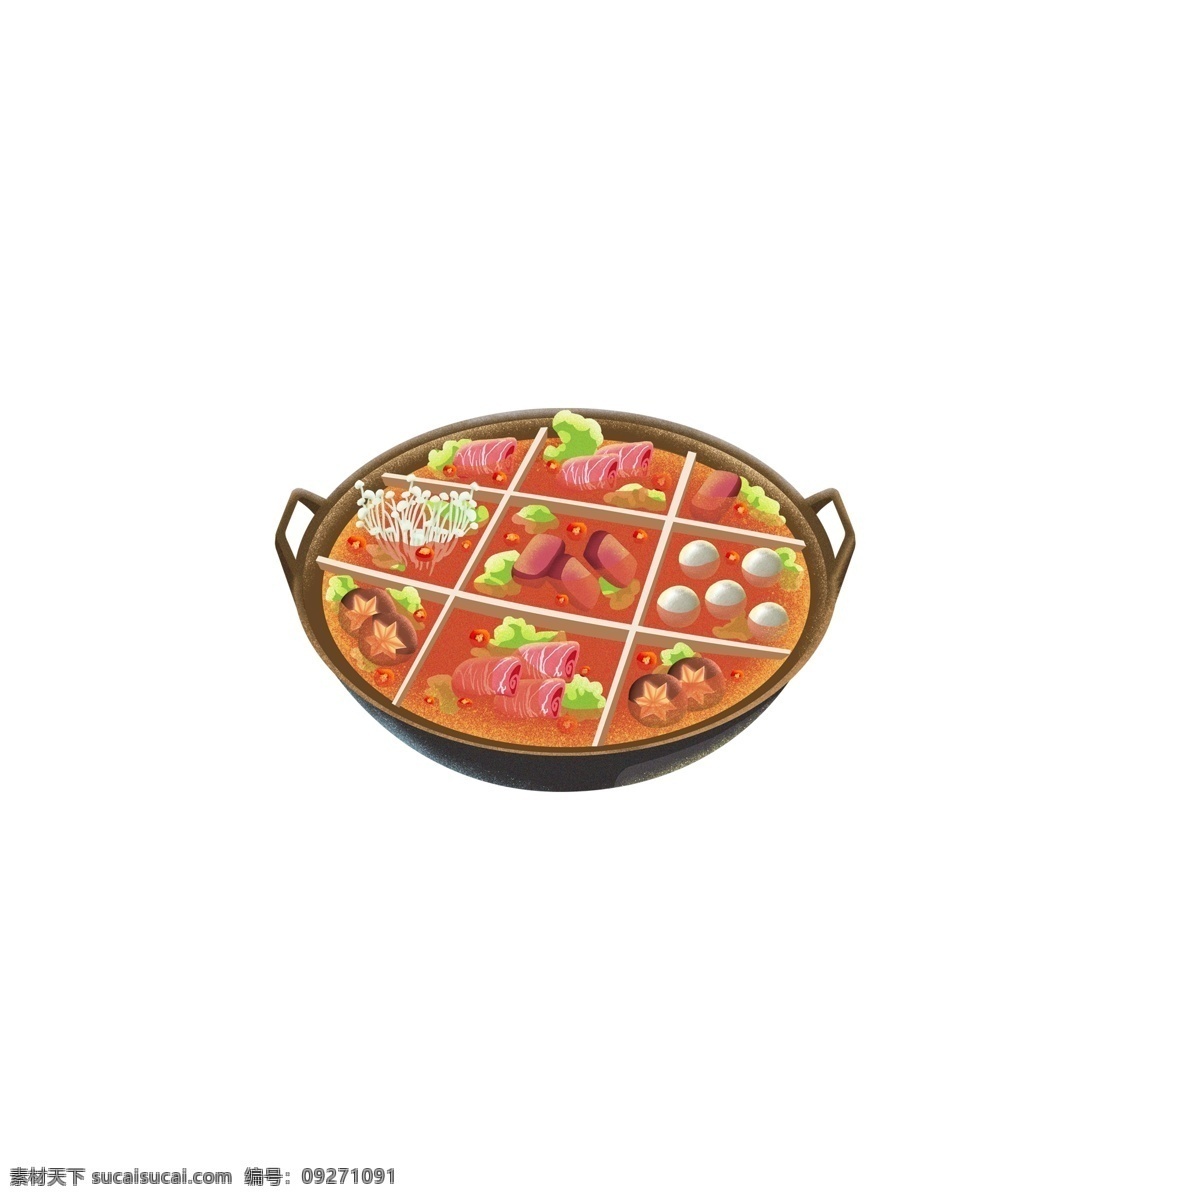 原创 火锅 元素 底料 食物 创意 设计元素 插画 透明素材